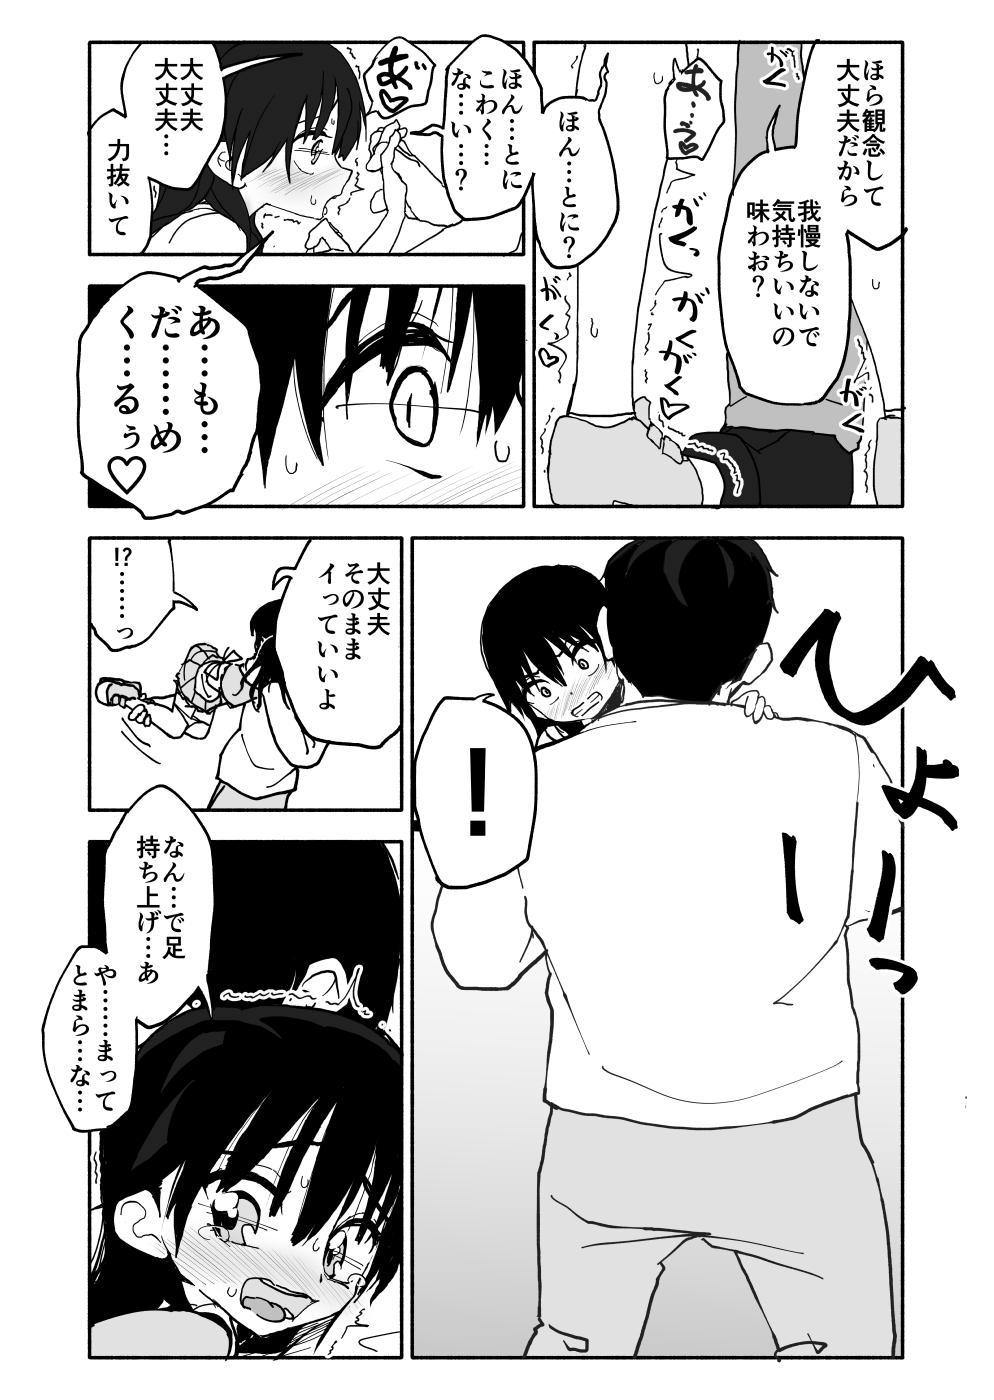 [Futotta Obasan] Okashi Tsukuri Idol ☆ Gimi ! Ecchi na Himitsu no Tokkun manga page 32 full